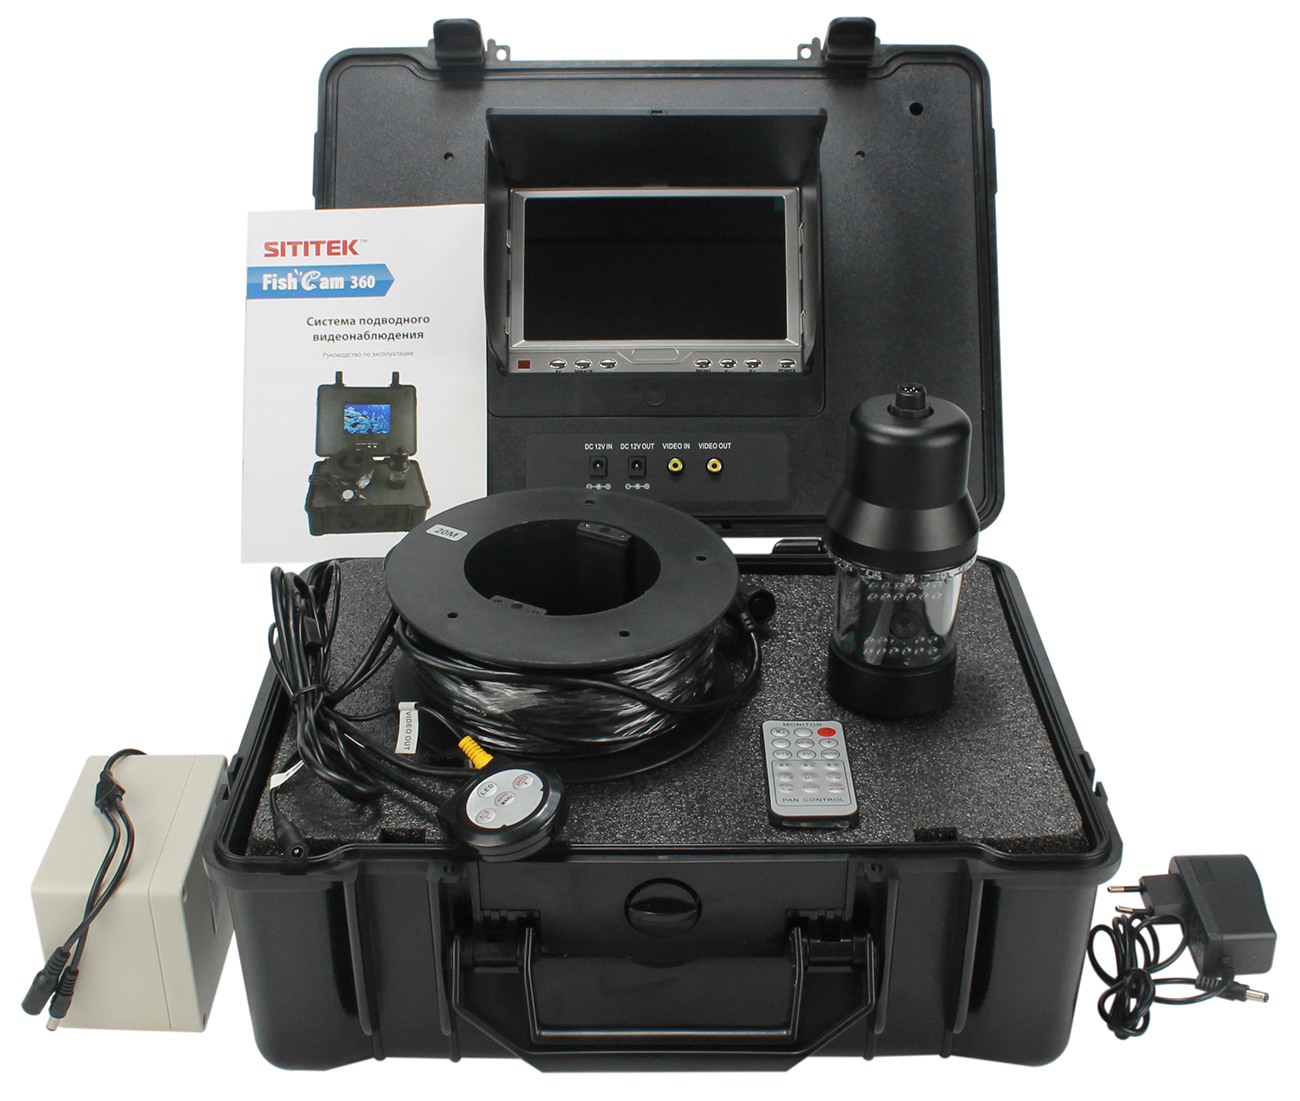 Подводная видео камера для рыбалки SITITEK FishCam-360 с углом обзора 360 градусов